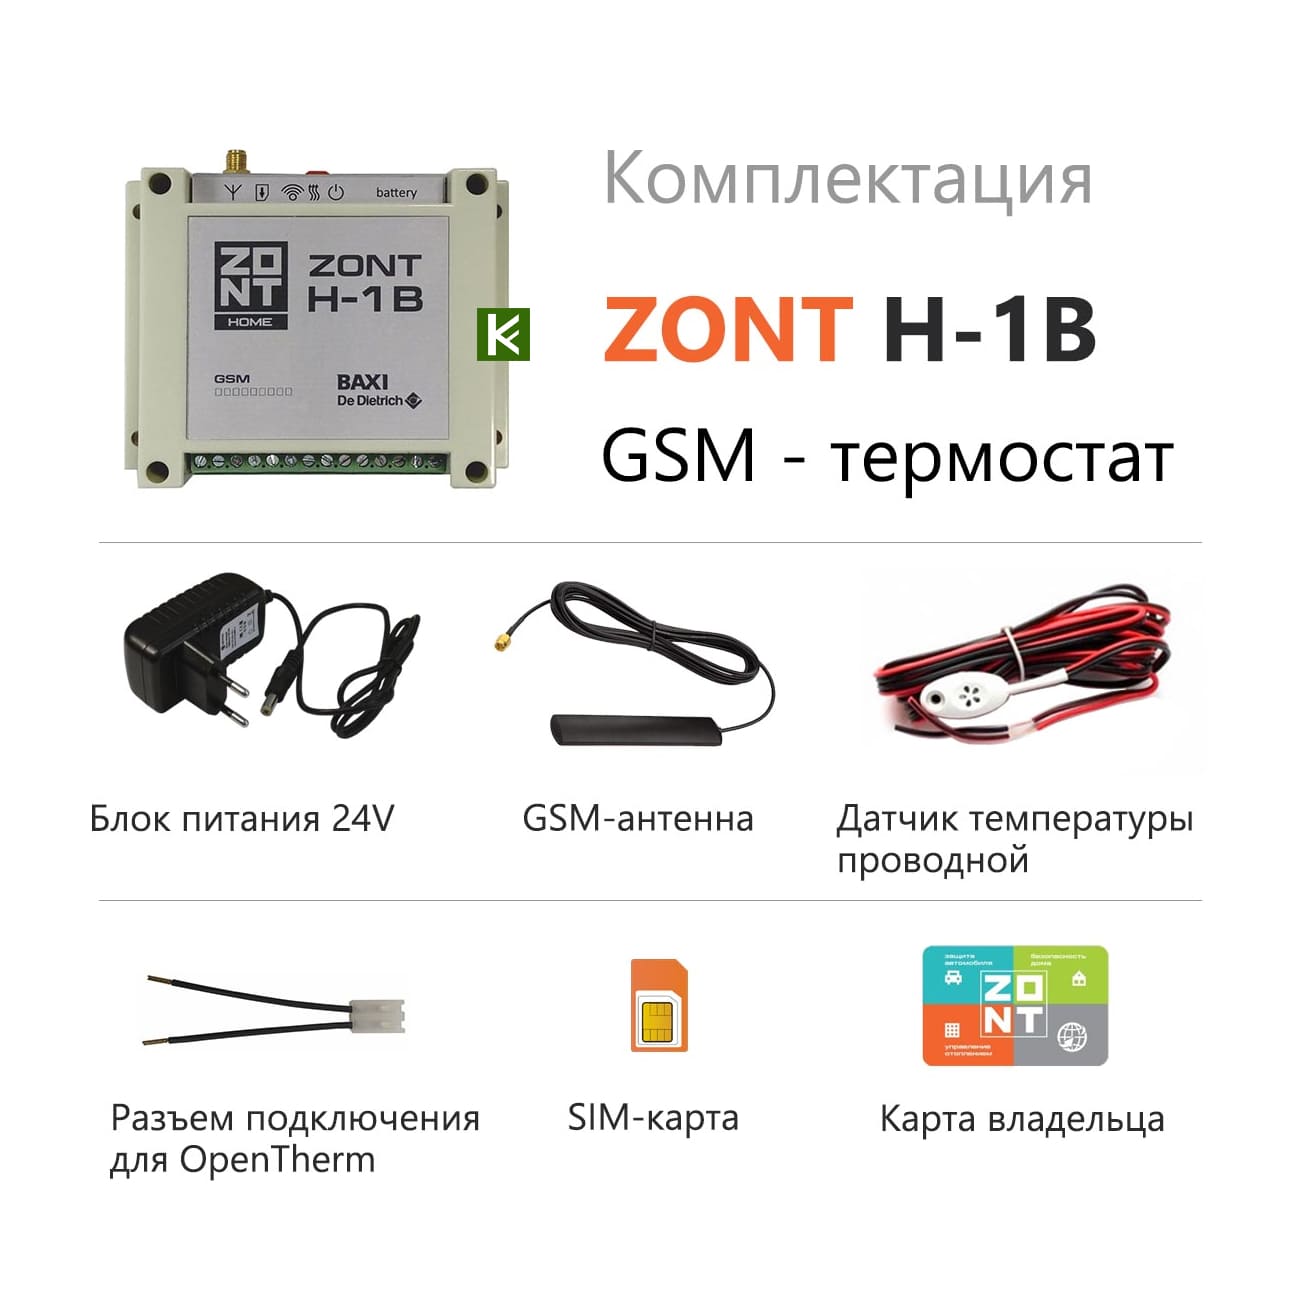 Zont карта. Zont h-1v Baxi OPENTHERM. GSM Zont h-1v. Система удаленного управления котлом Zont-h1b Baxi. Zont h-1 контроллер.